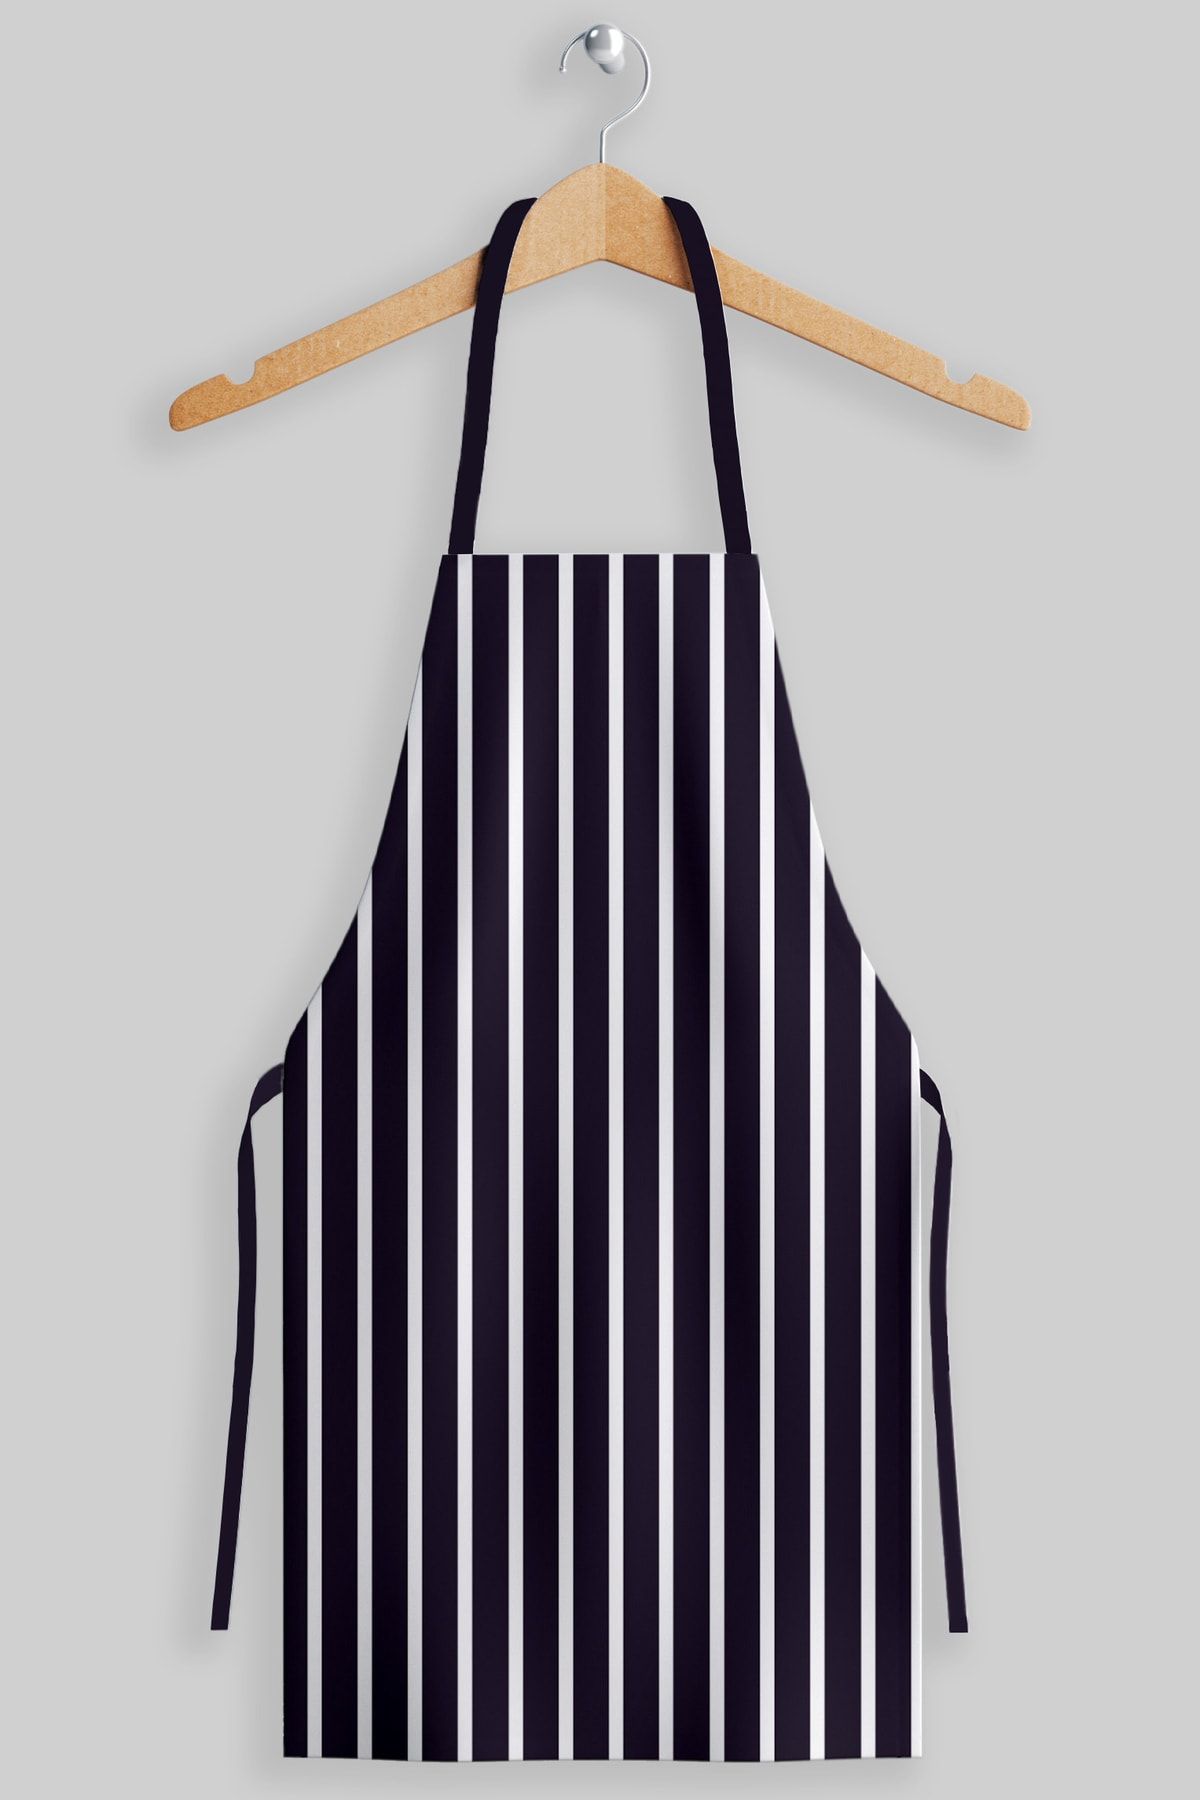 AYSHOME Ays Home Büyük Ebat Lacivert Çizgili Şef Aşçı Mutfak Önlüğü (65 CM X 85 CM)